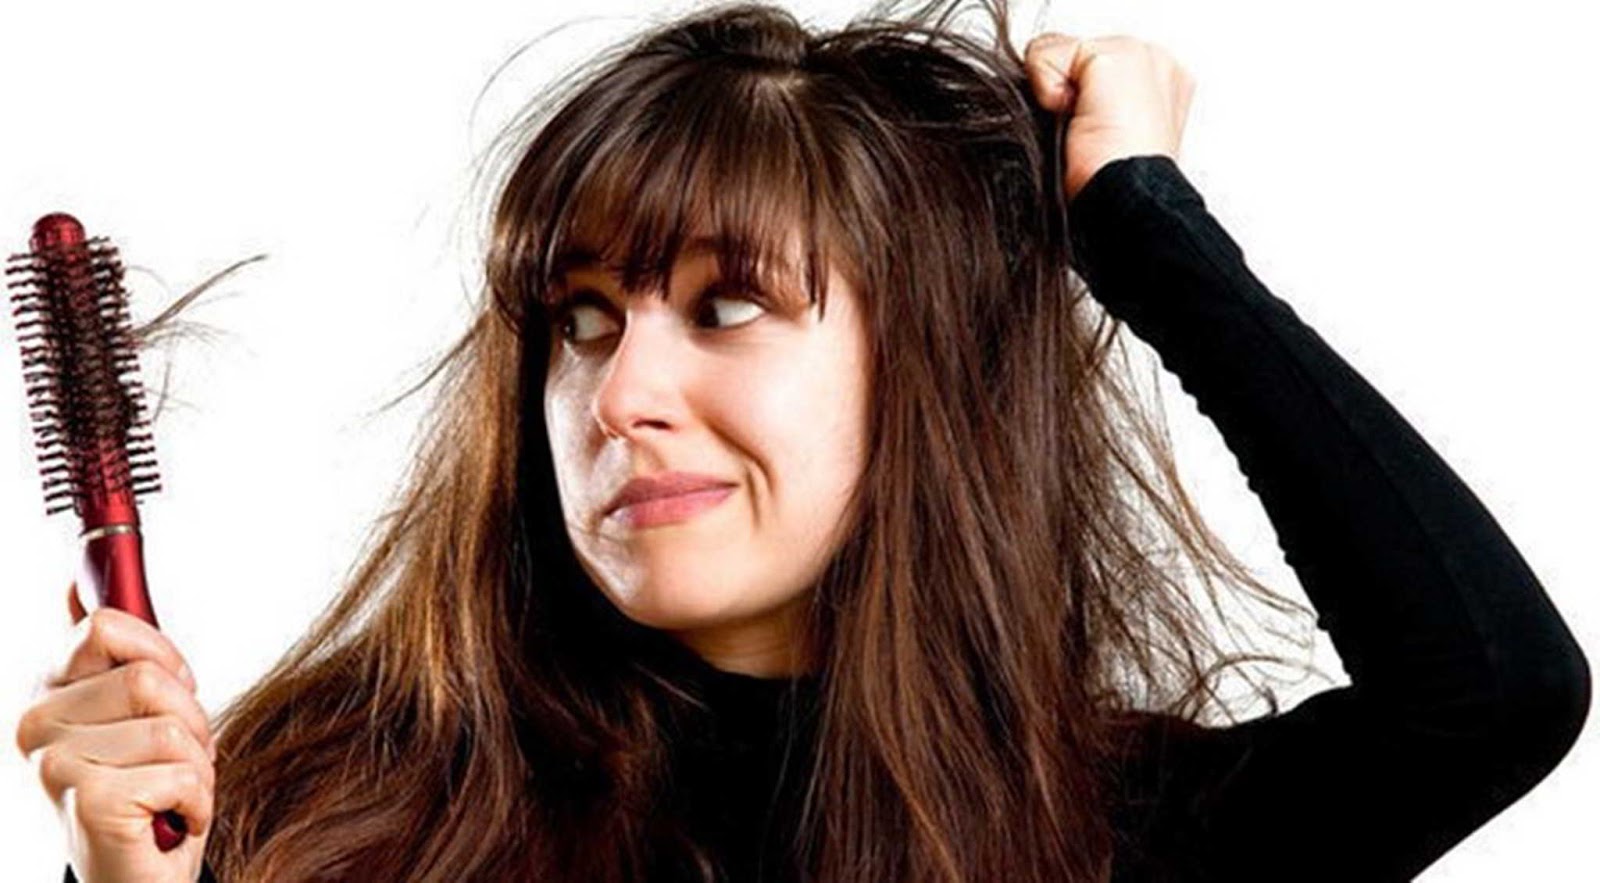 Artikel Manfaat Minyak Kelapa Untuk Rambut Rontok Tips Cara